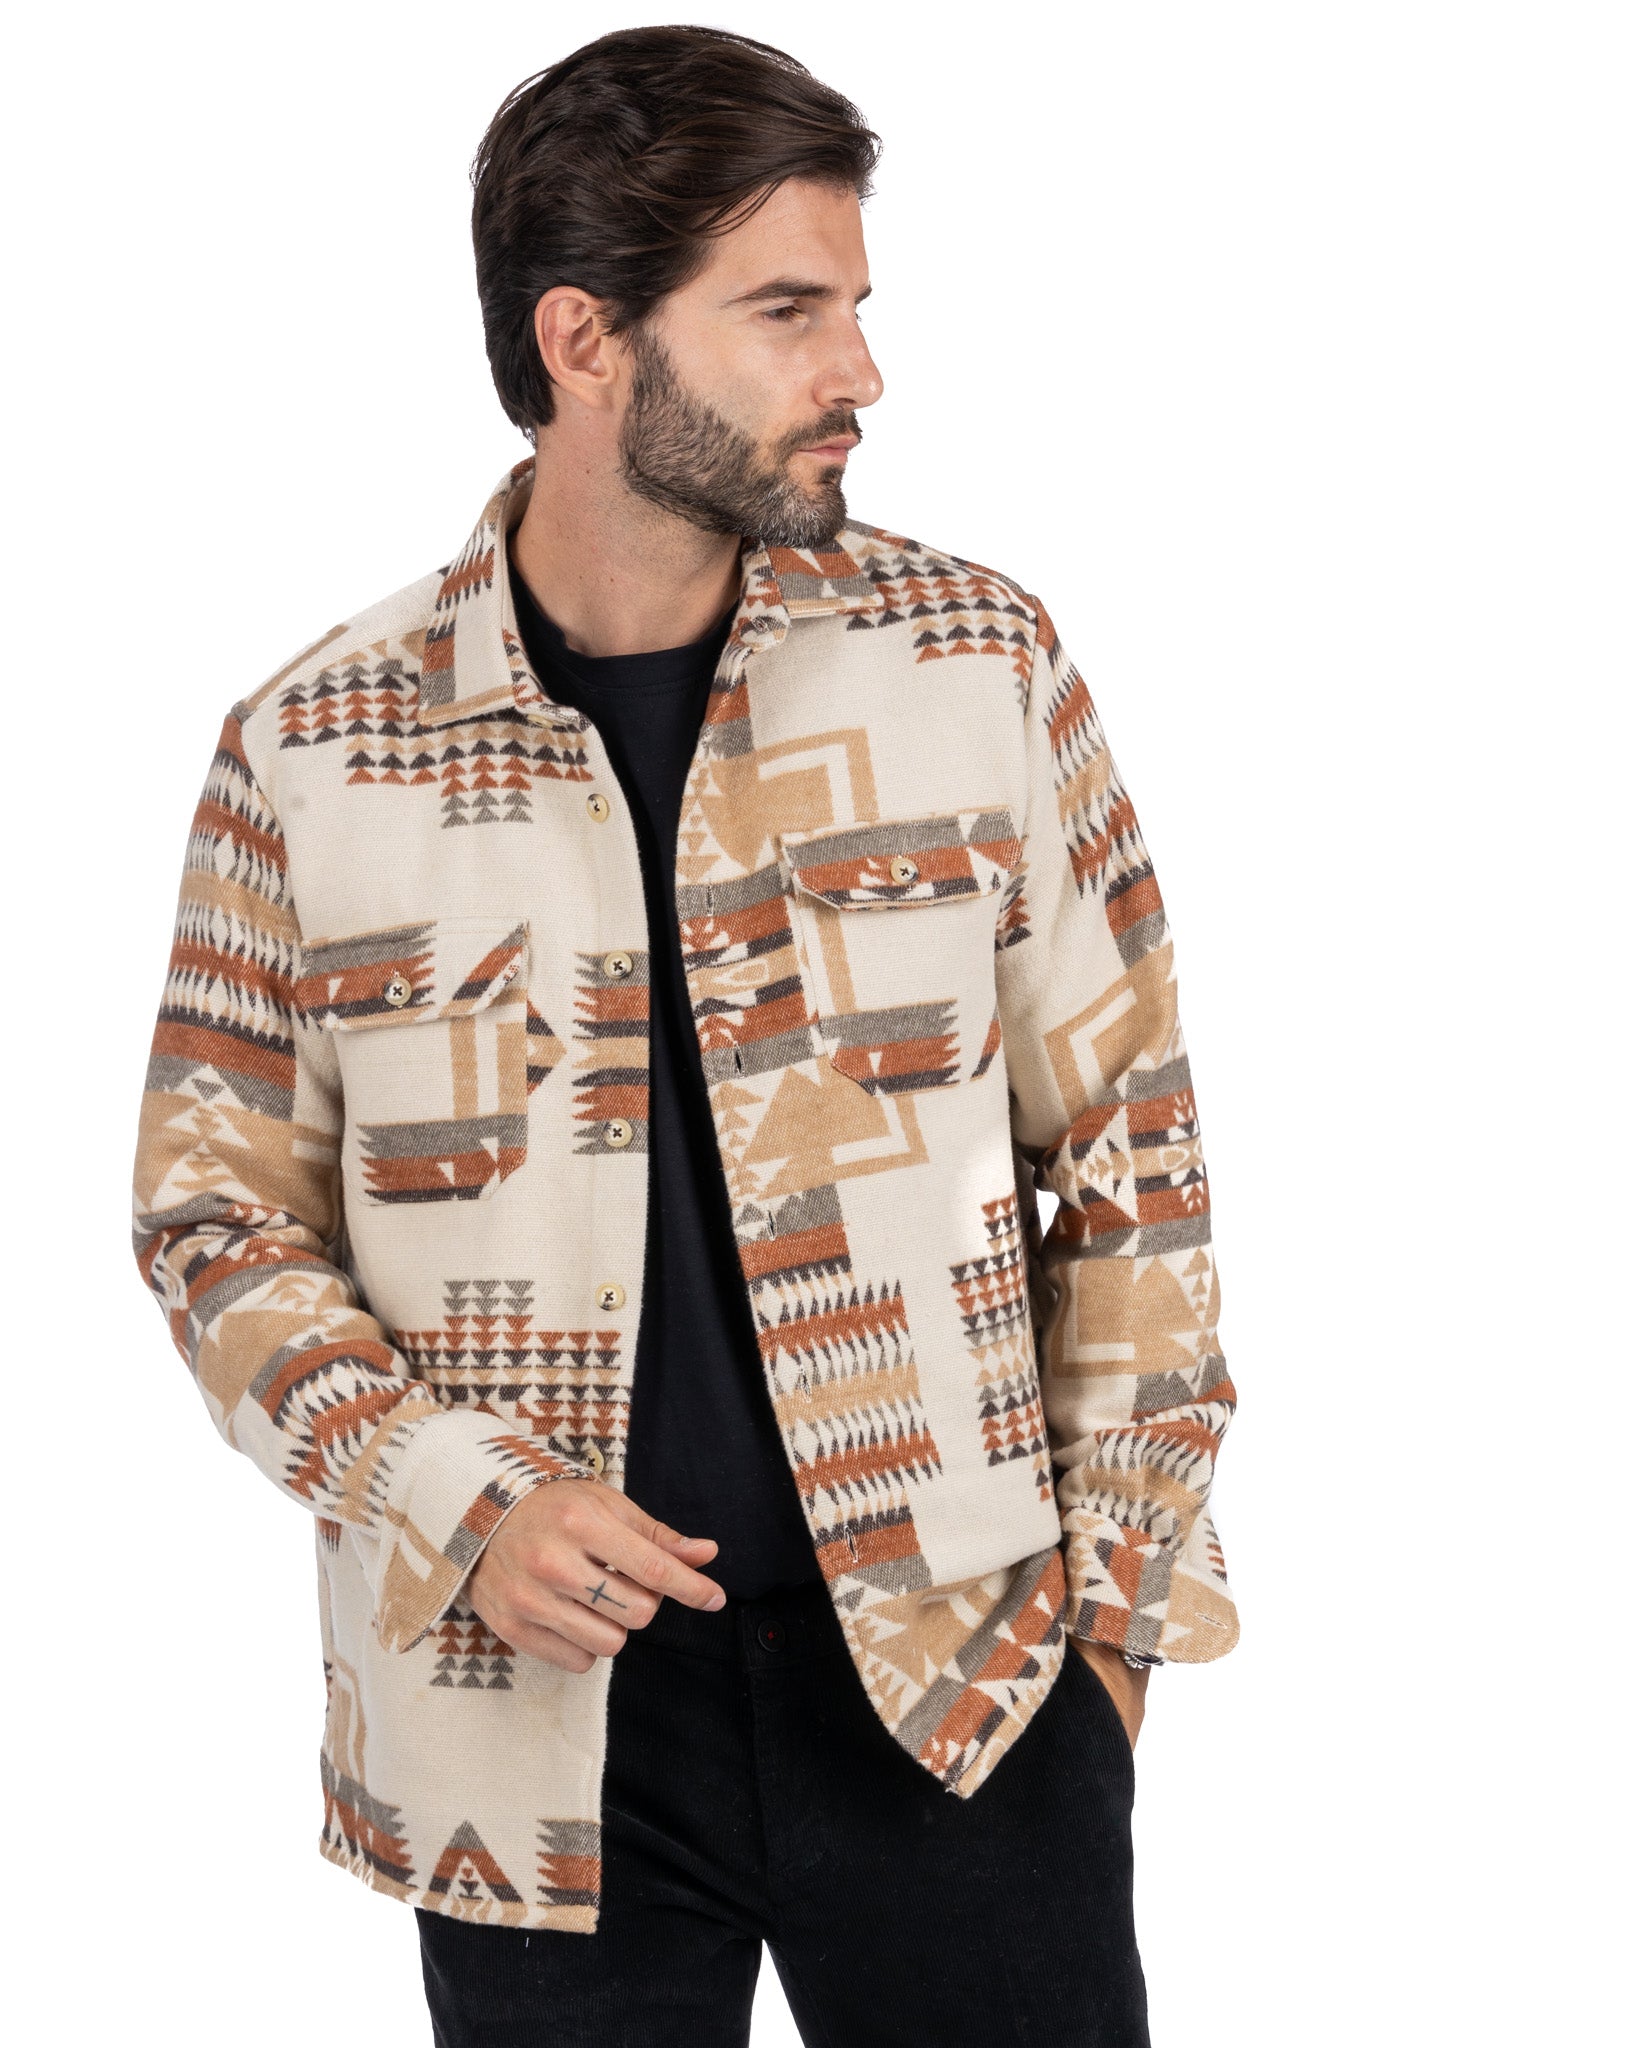 Mayor - beige ethnic patterned jacket